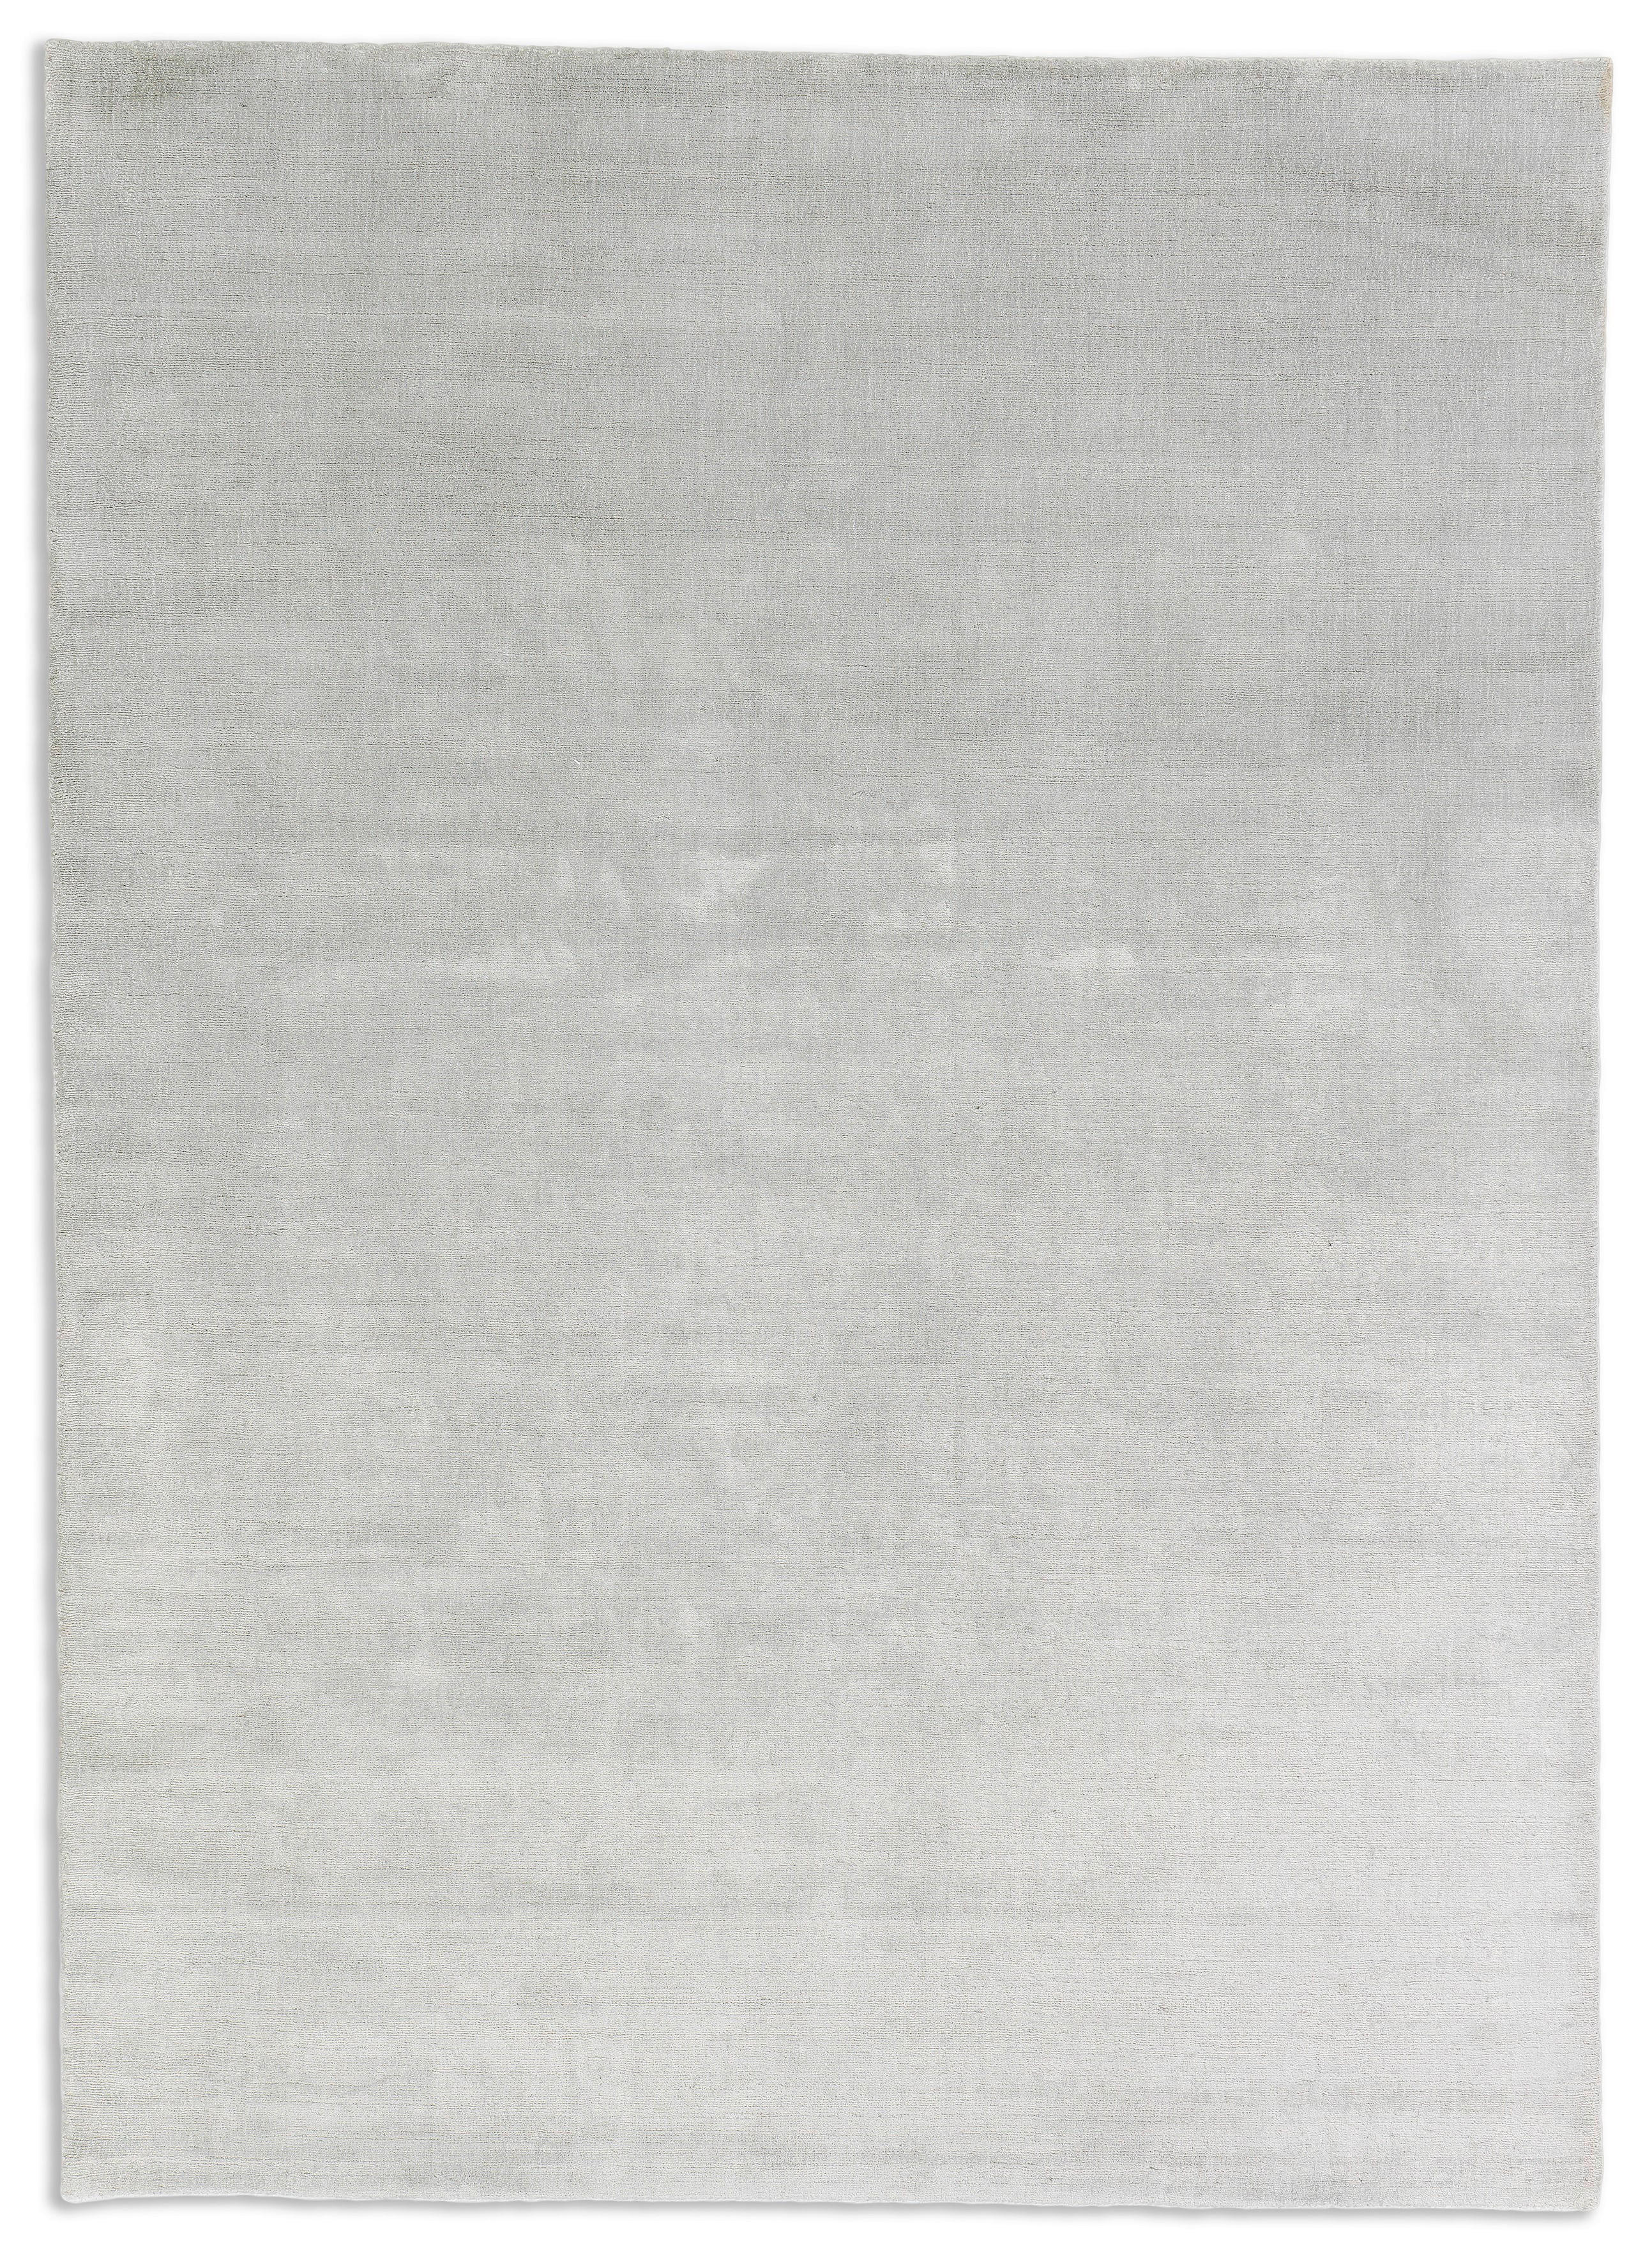 HANDWEBTEPPICH 170/240 cm  - Silberfarben, Design, Textil (170/240cm) - Schöner Wohnen